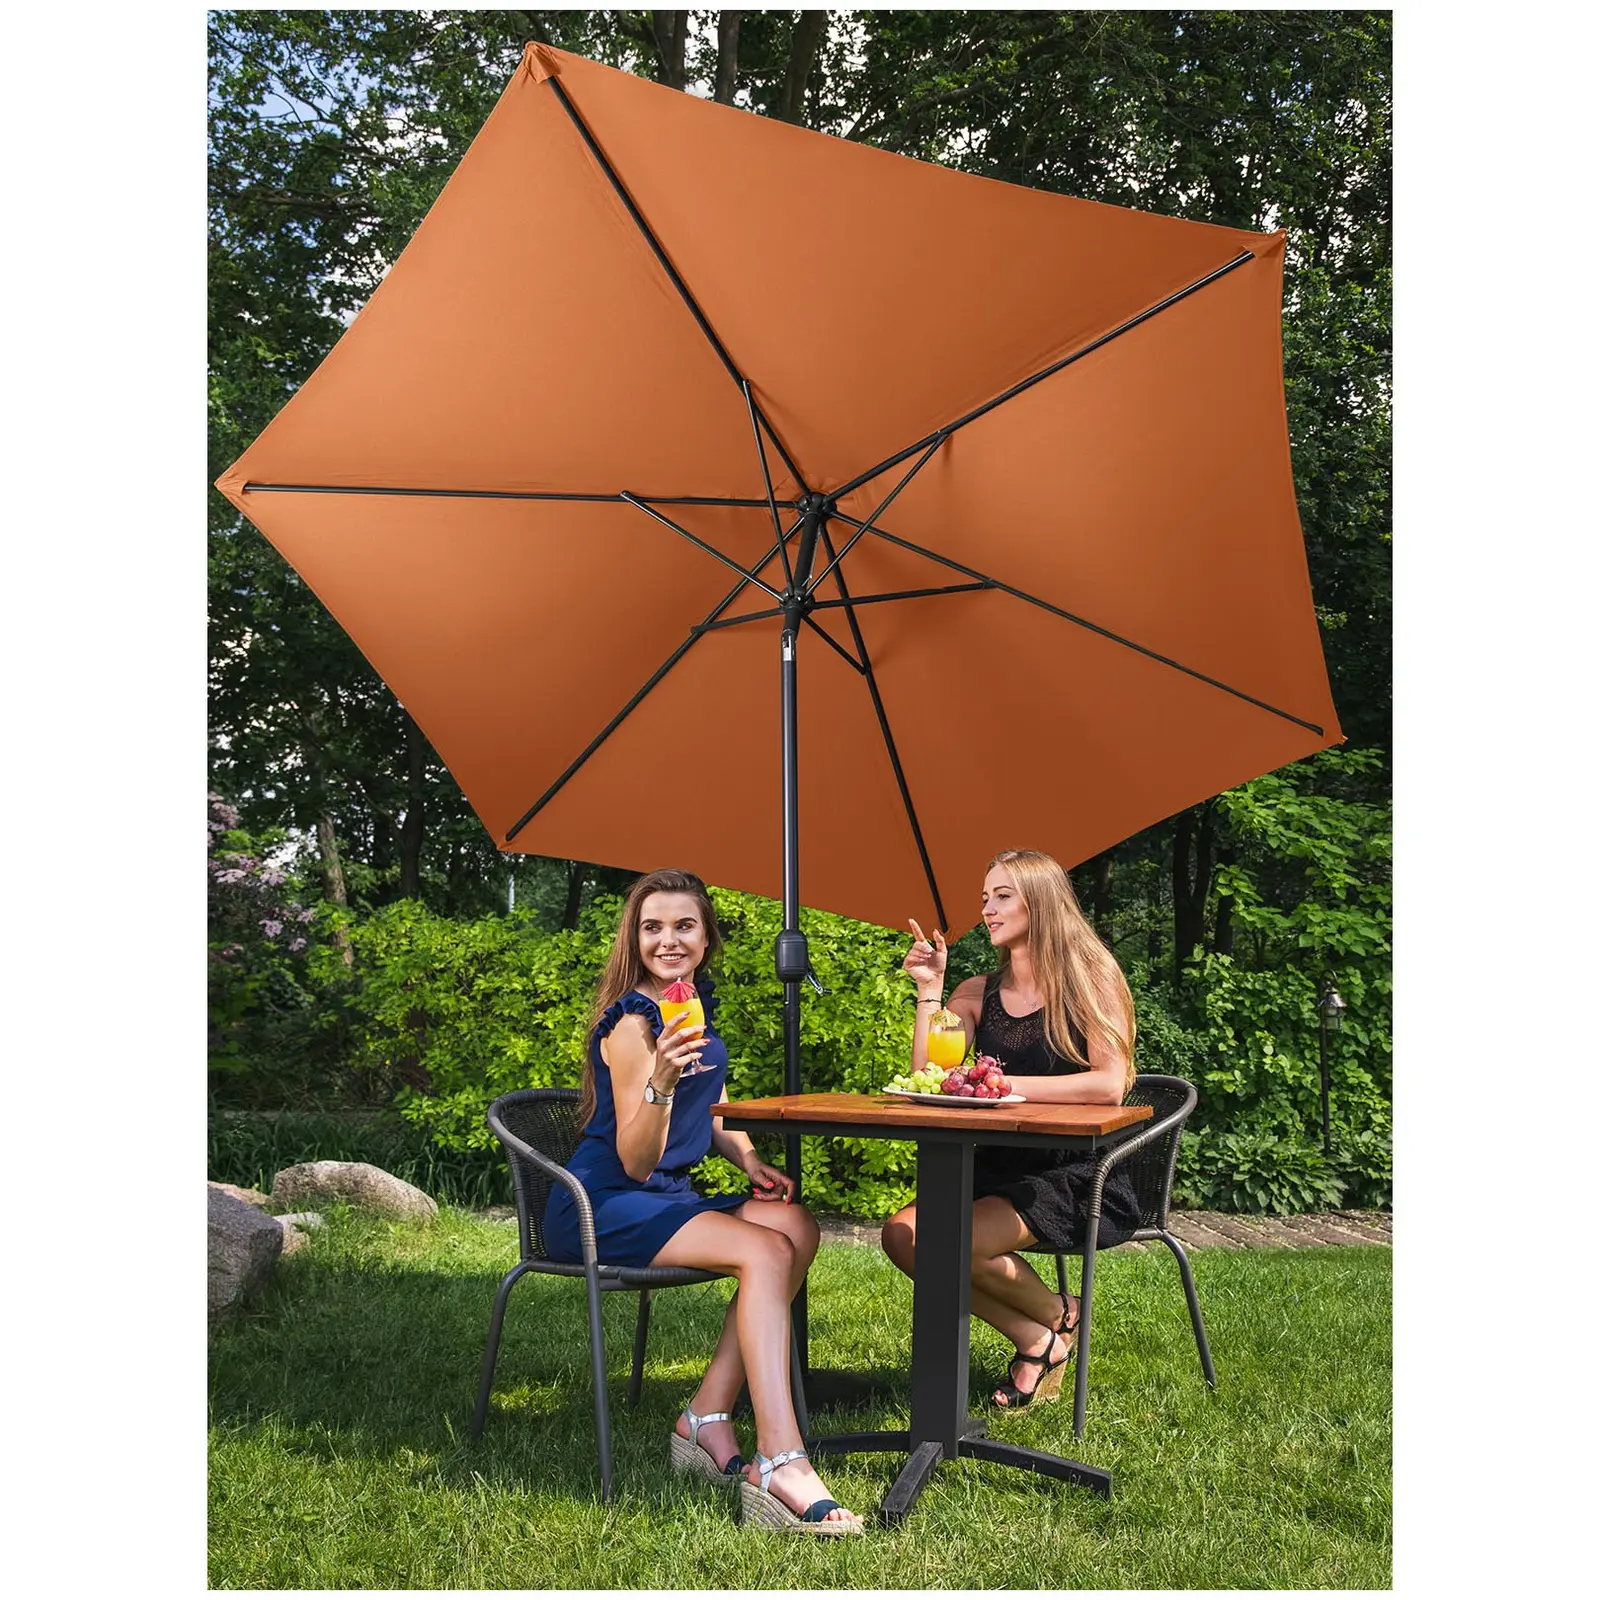 Sonnenschirm groß - orange - sechseckig - Ø 270 cm - neigbar